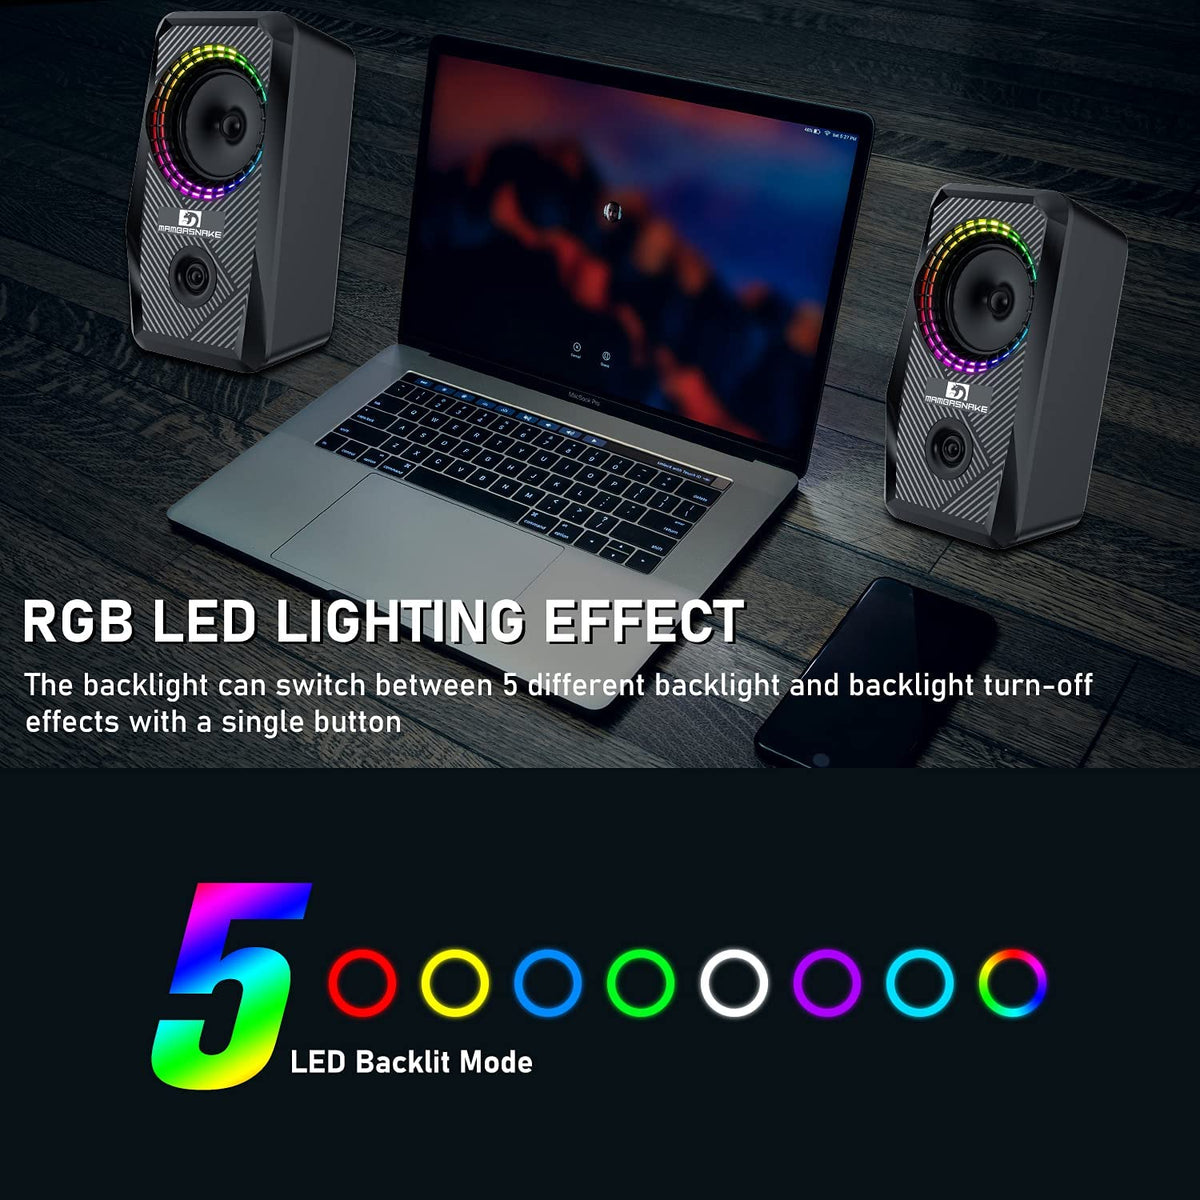 Kabelgebundene RGB-Computerlautsprecher, 2.0-Kanal-PC-Stereolautsprecher mit 6 bunten LED-Modi, verbessertem Sound und leicht zugänglicher Lautstärkeregelung, USB-betriebene Desktop-Lautsprecher 3,5-mm-Kabel für PCs und Laptops (Schwarz)